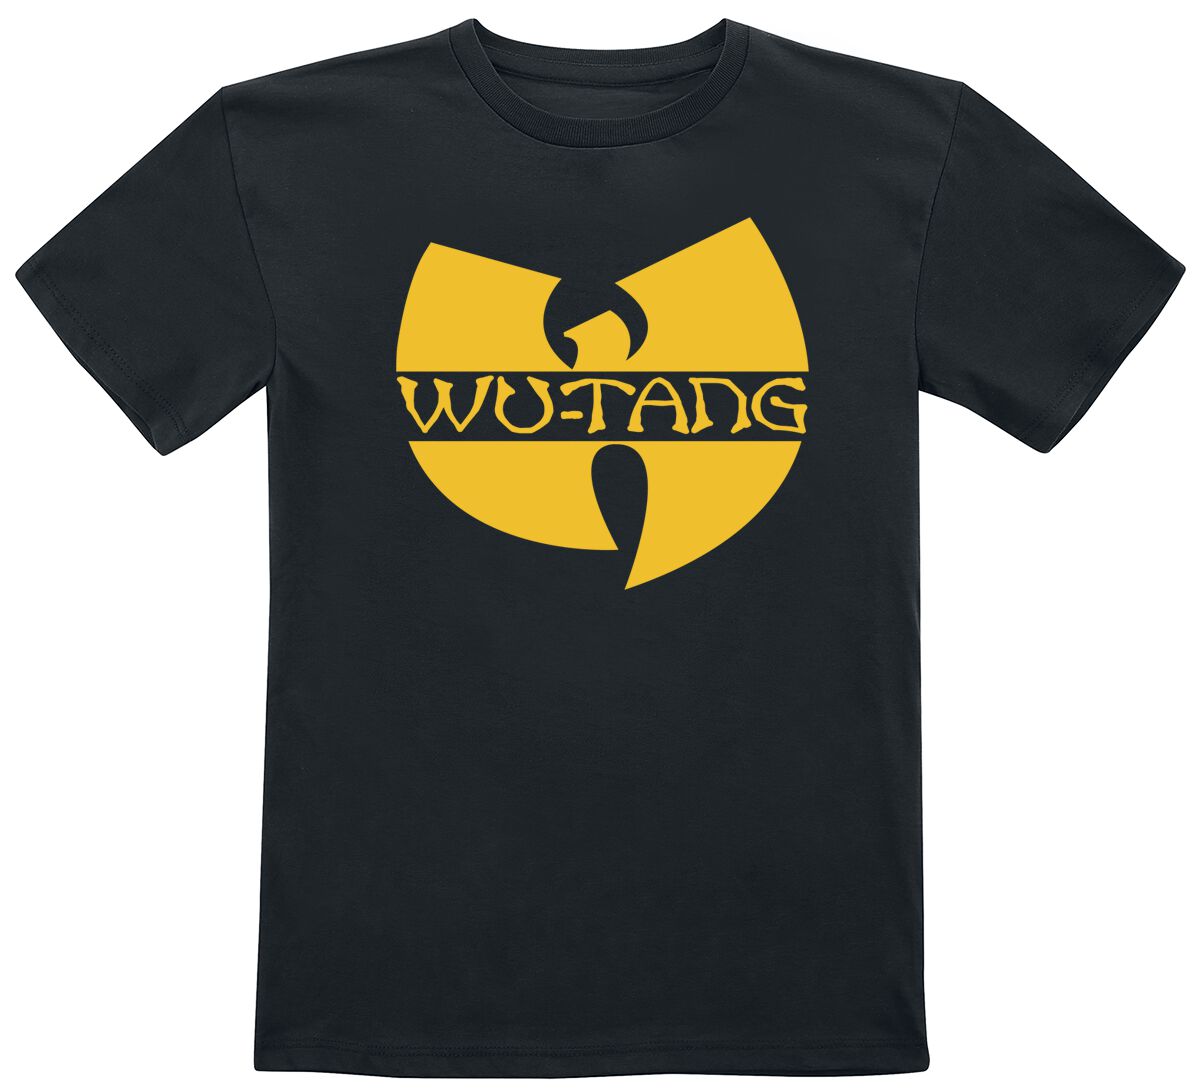 Wu-Tang Clan T-Shirt für Kinder - Kids - Logo - für Mädchen & Jungen - schwarz  - Lizenziertes Merchandise!